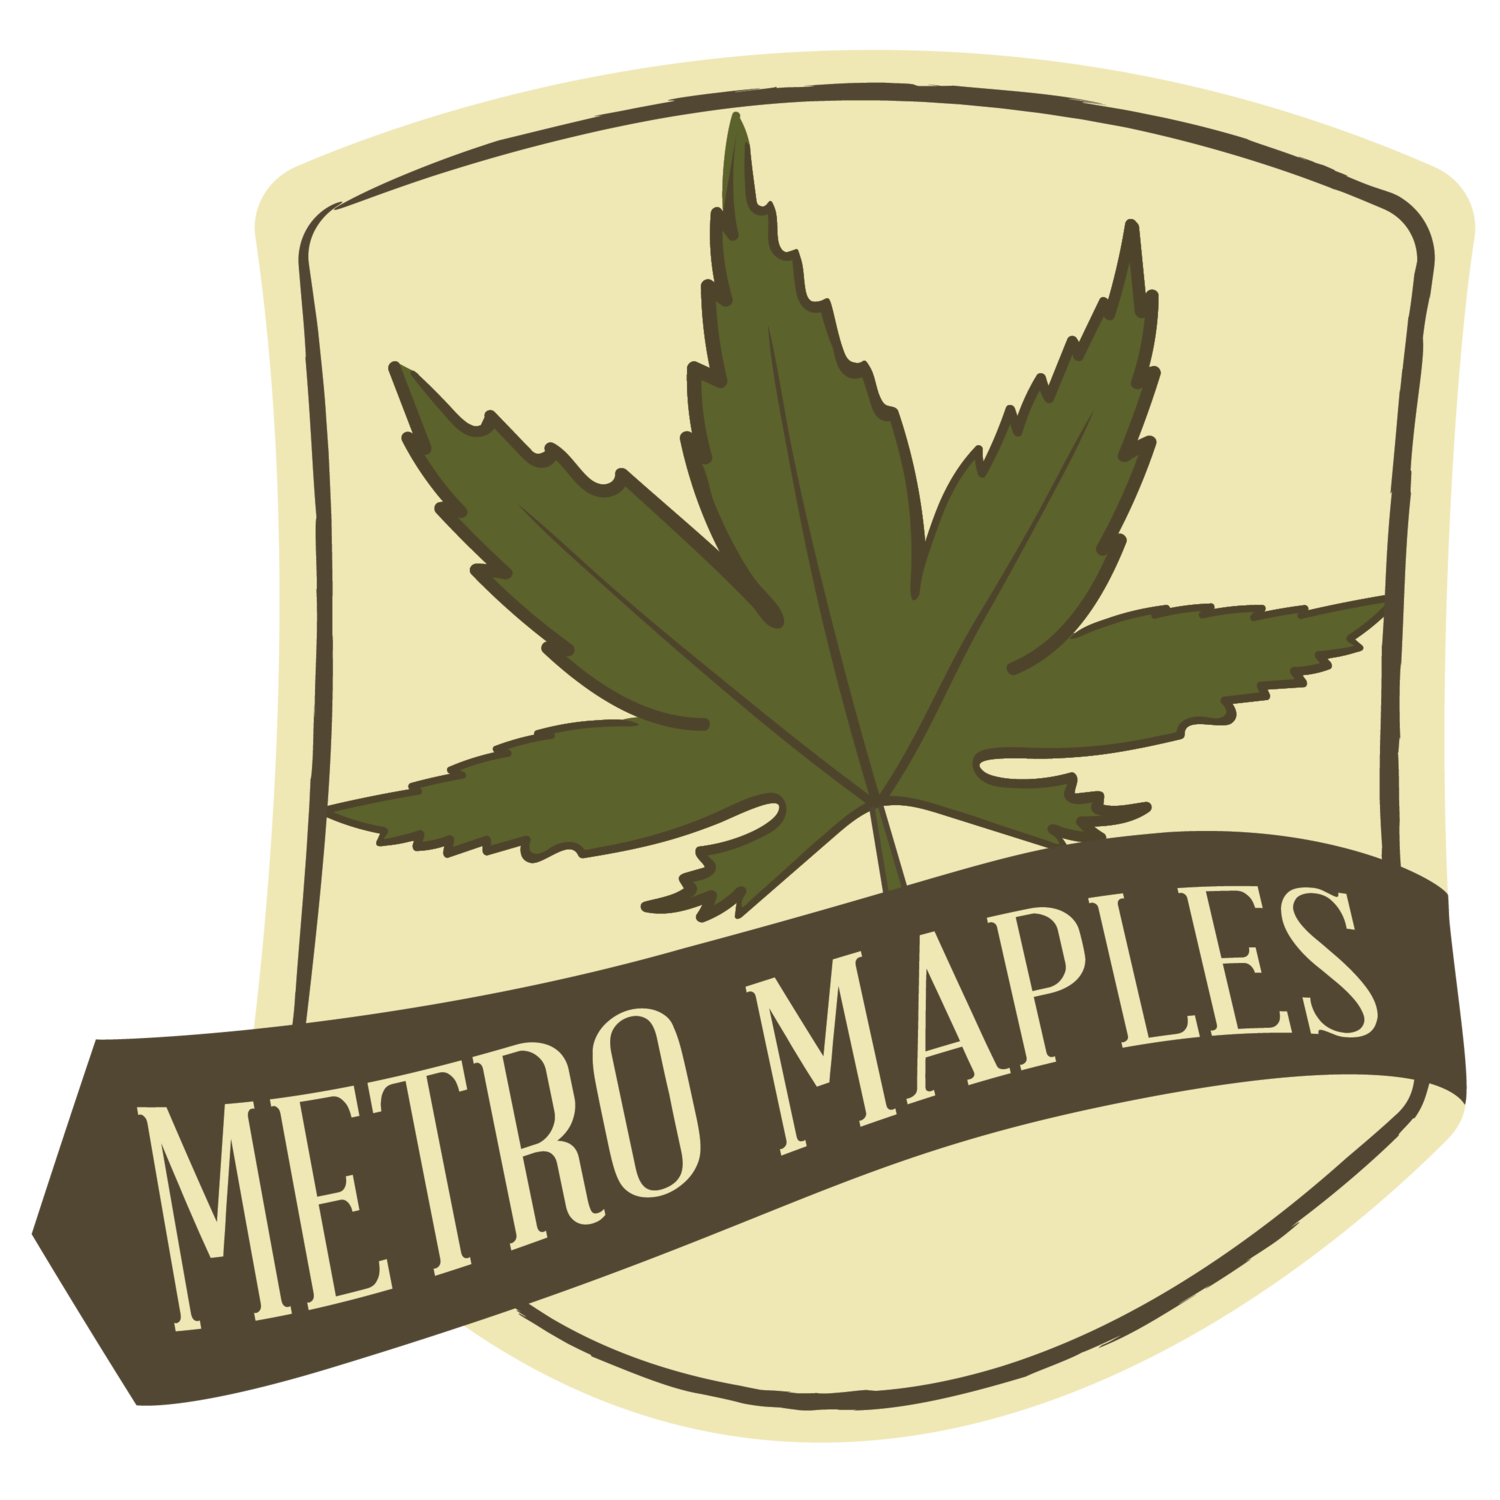 Metro Maples